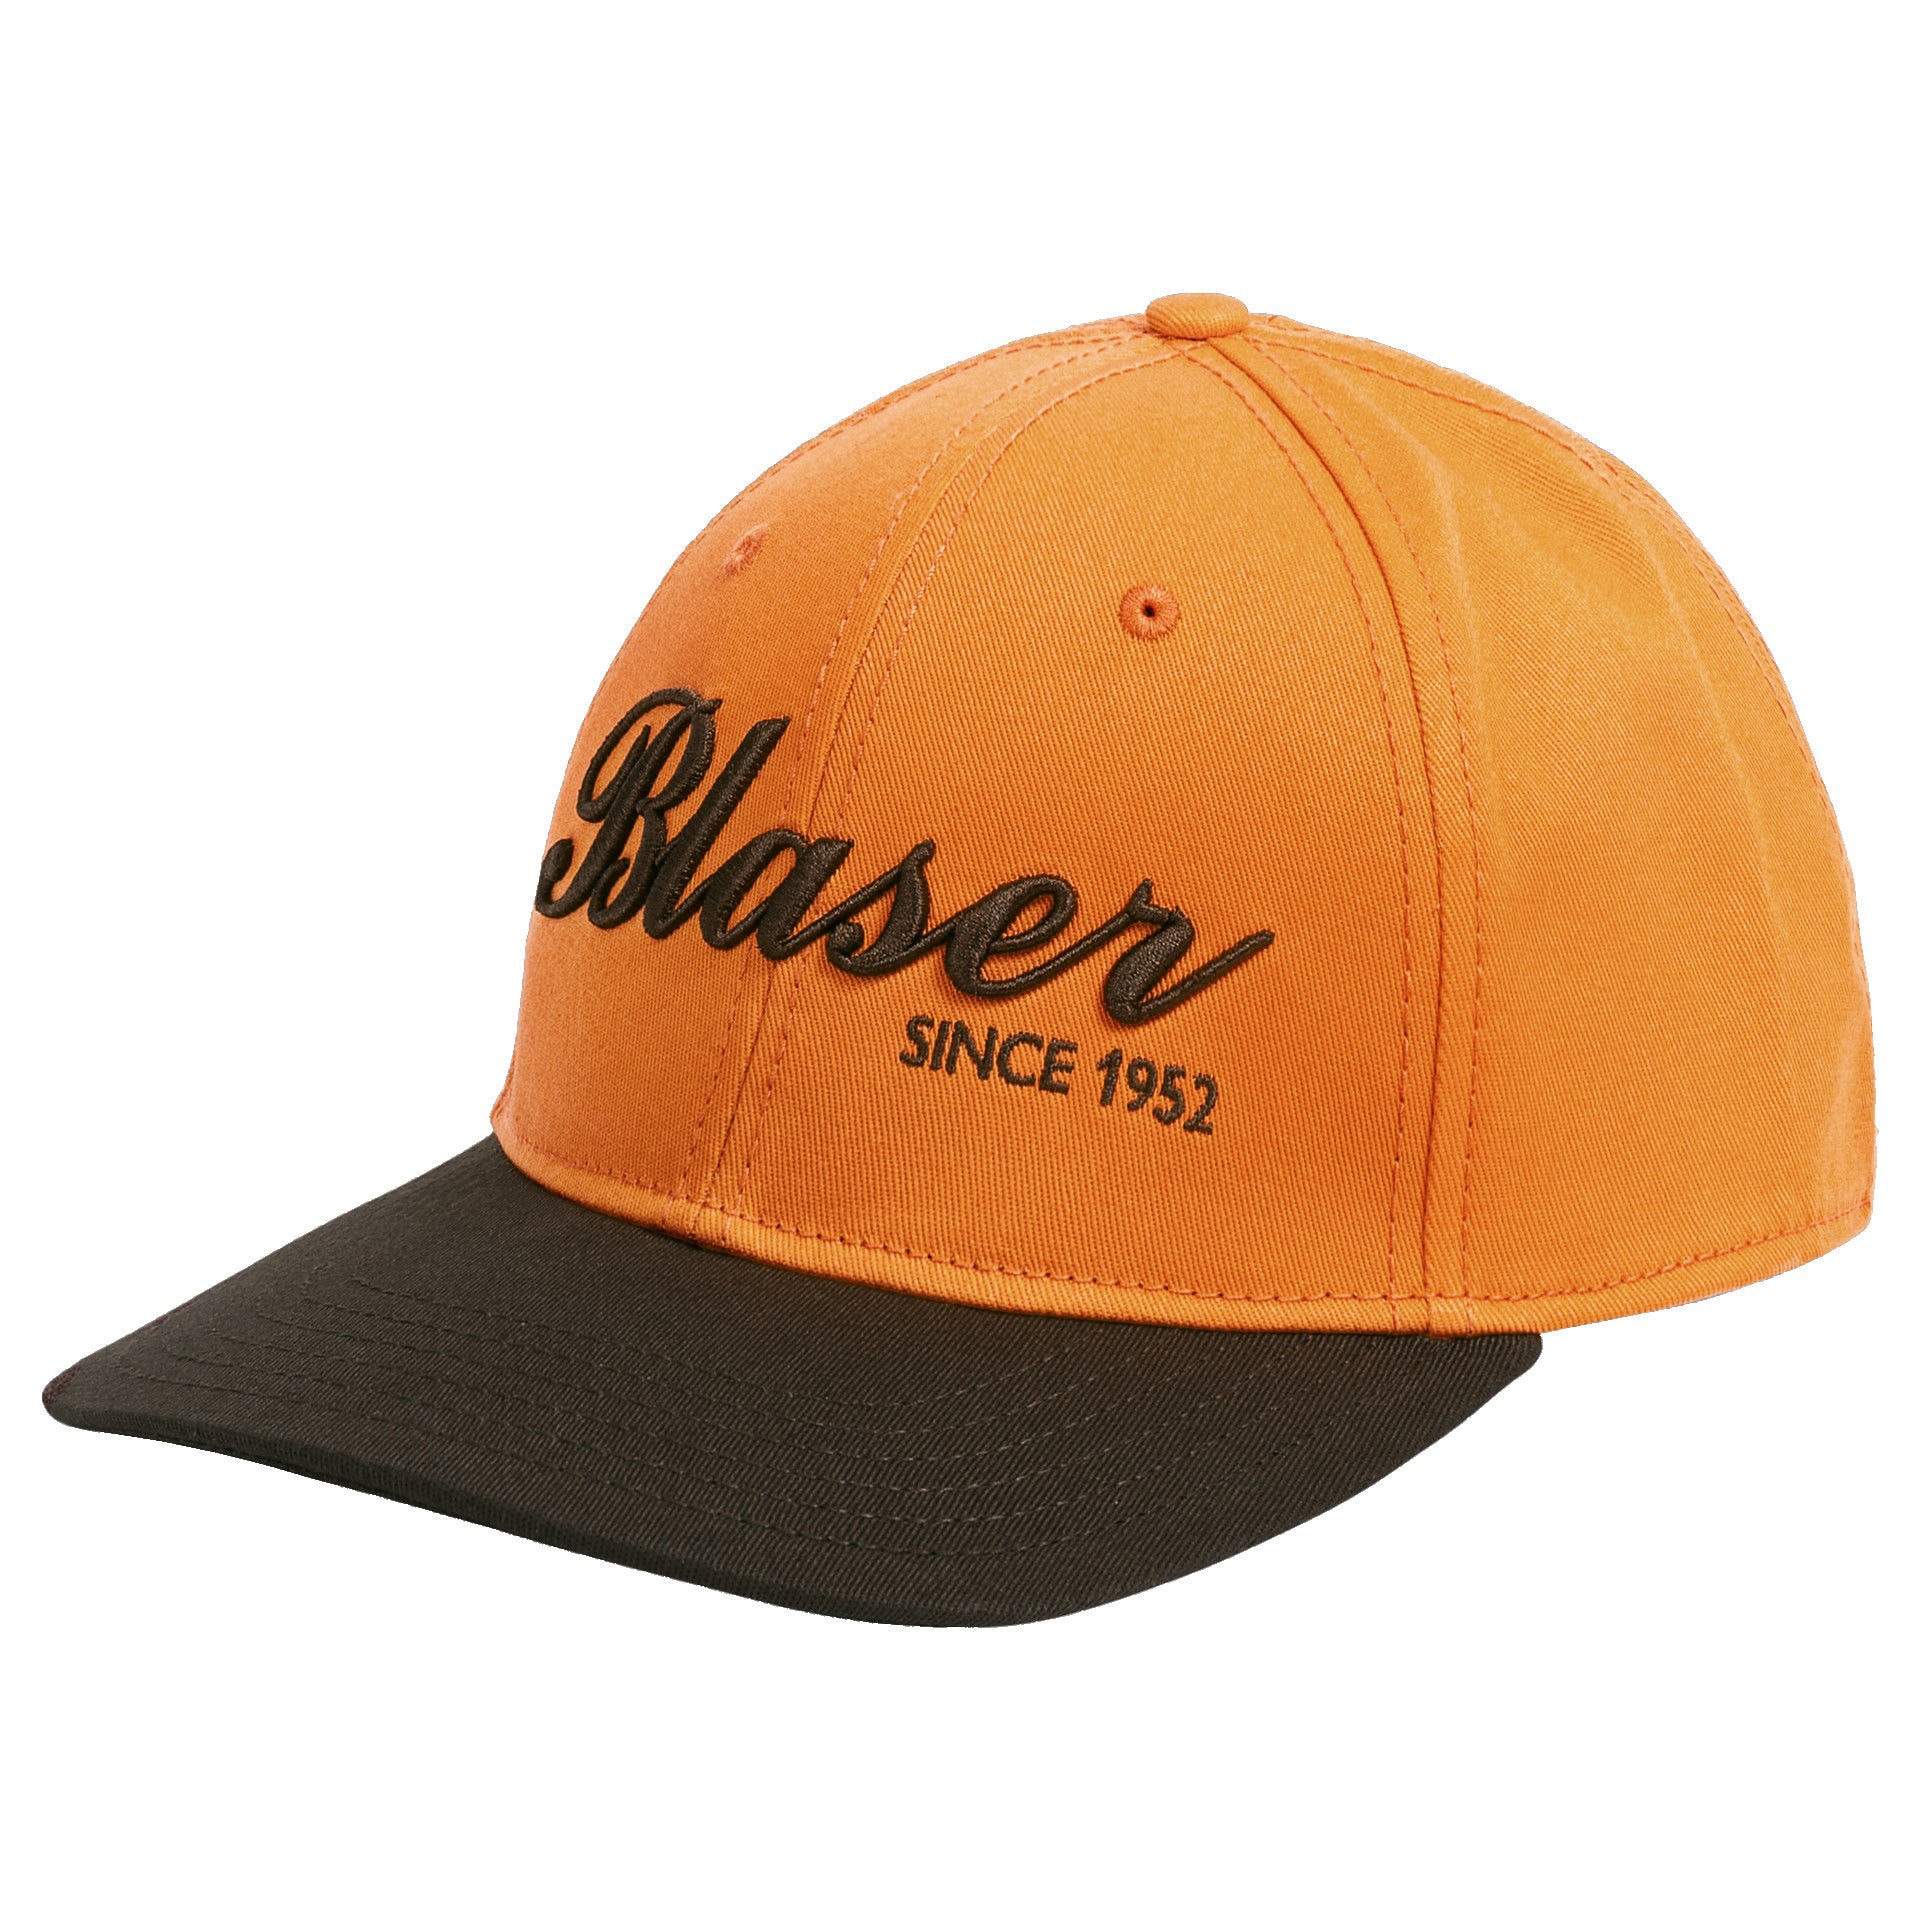 Blaser Striker Cap Limited Edition Blaze Orange/Dark Brown